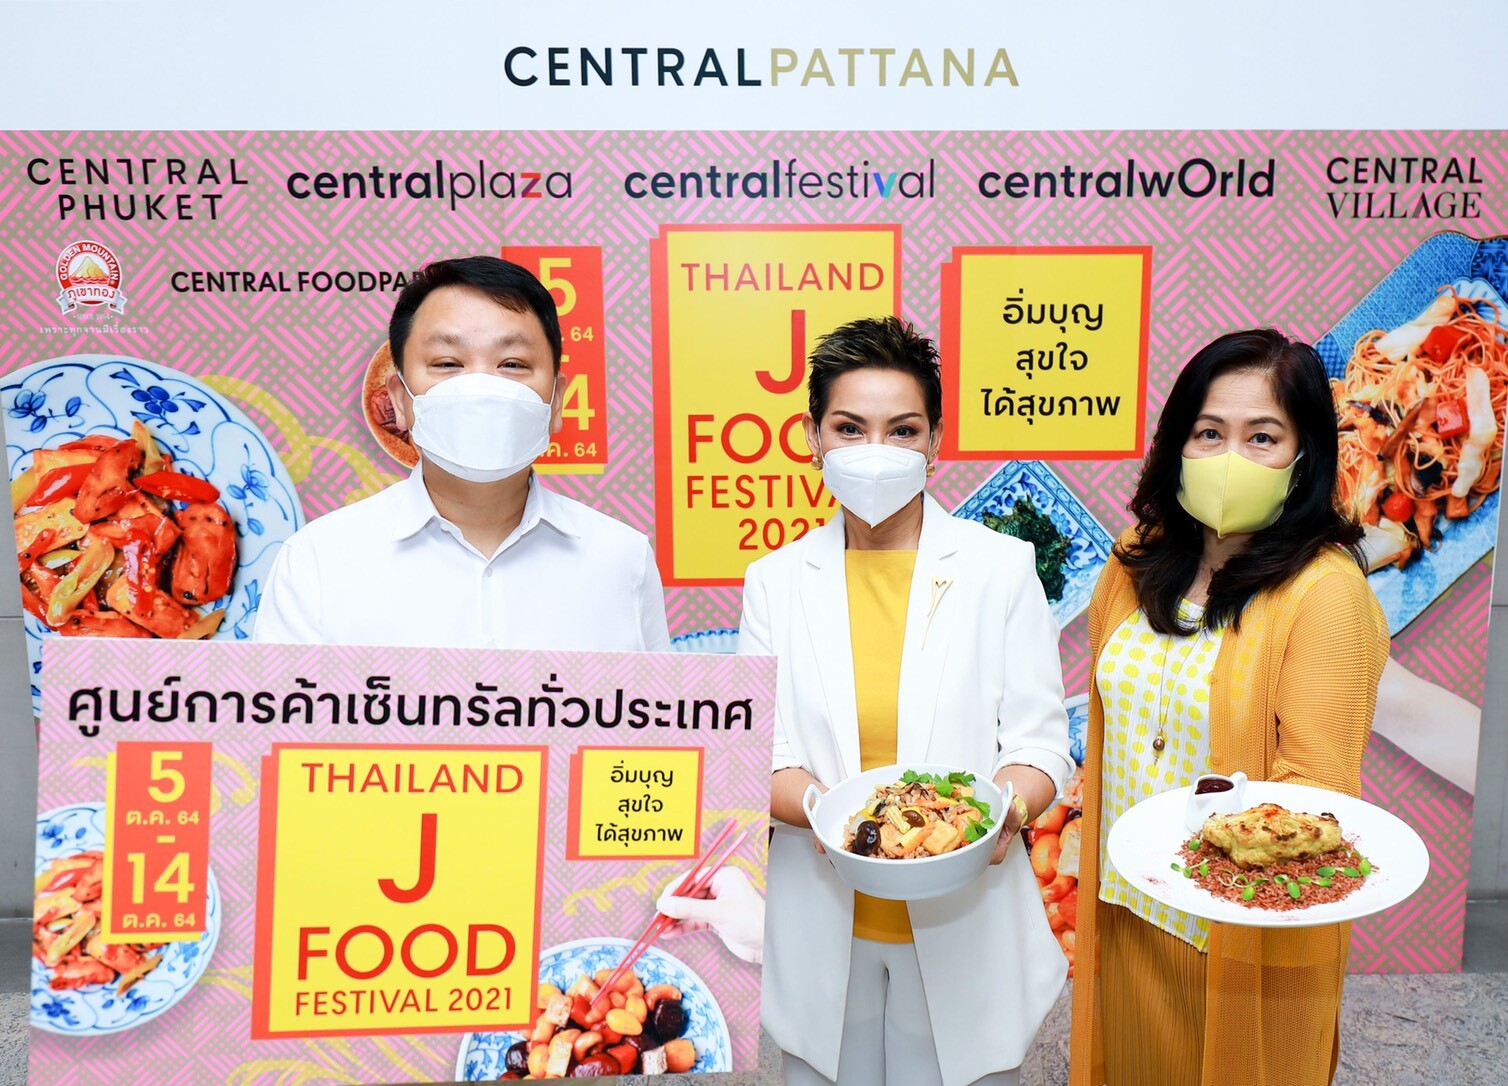 ที่สุดของอาหารเจ Thailand J Food Festival ที่ศูนย์การค้าเซ็นทรัล  ท็อปฟอร์มเดสติเนชั่นแห่งเทศกาลกินเจ รวมสุดยอดเมนูเจทุกรูปแบบไว้ในที่เดียว เริ่ม 5-14 ต.ค. 64 นี้